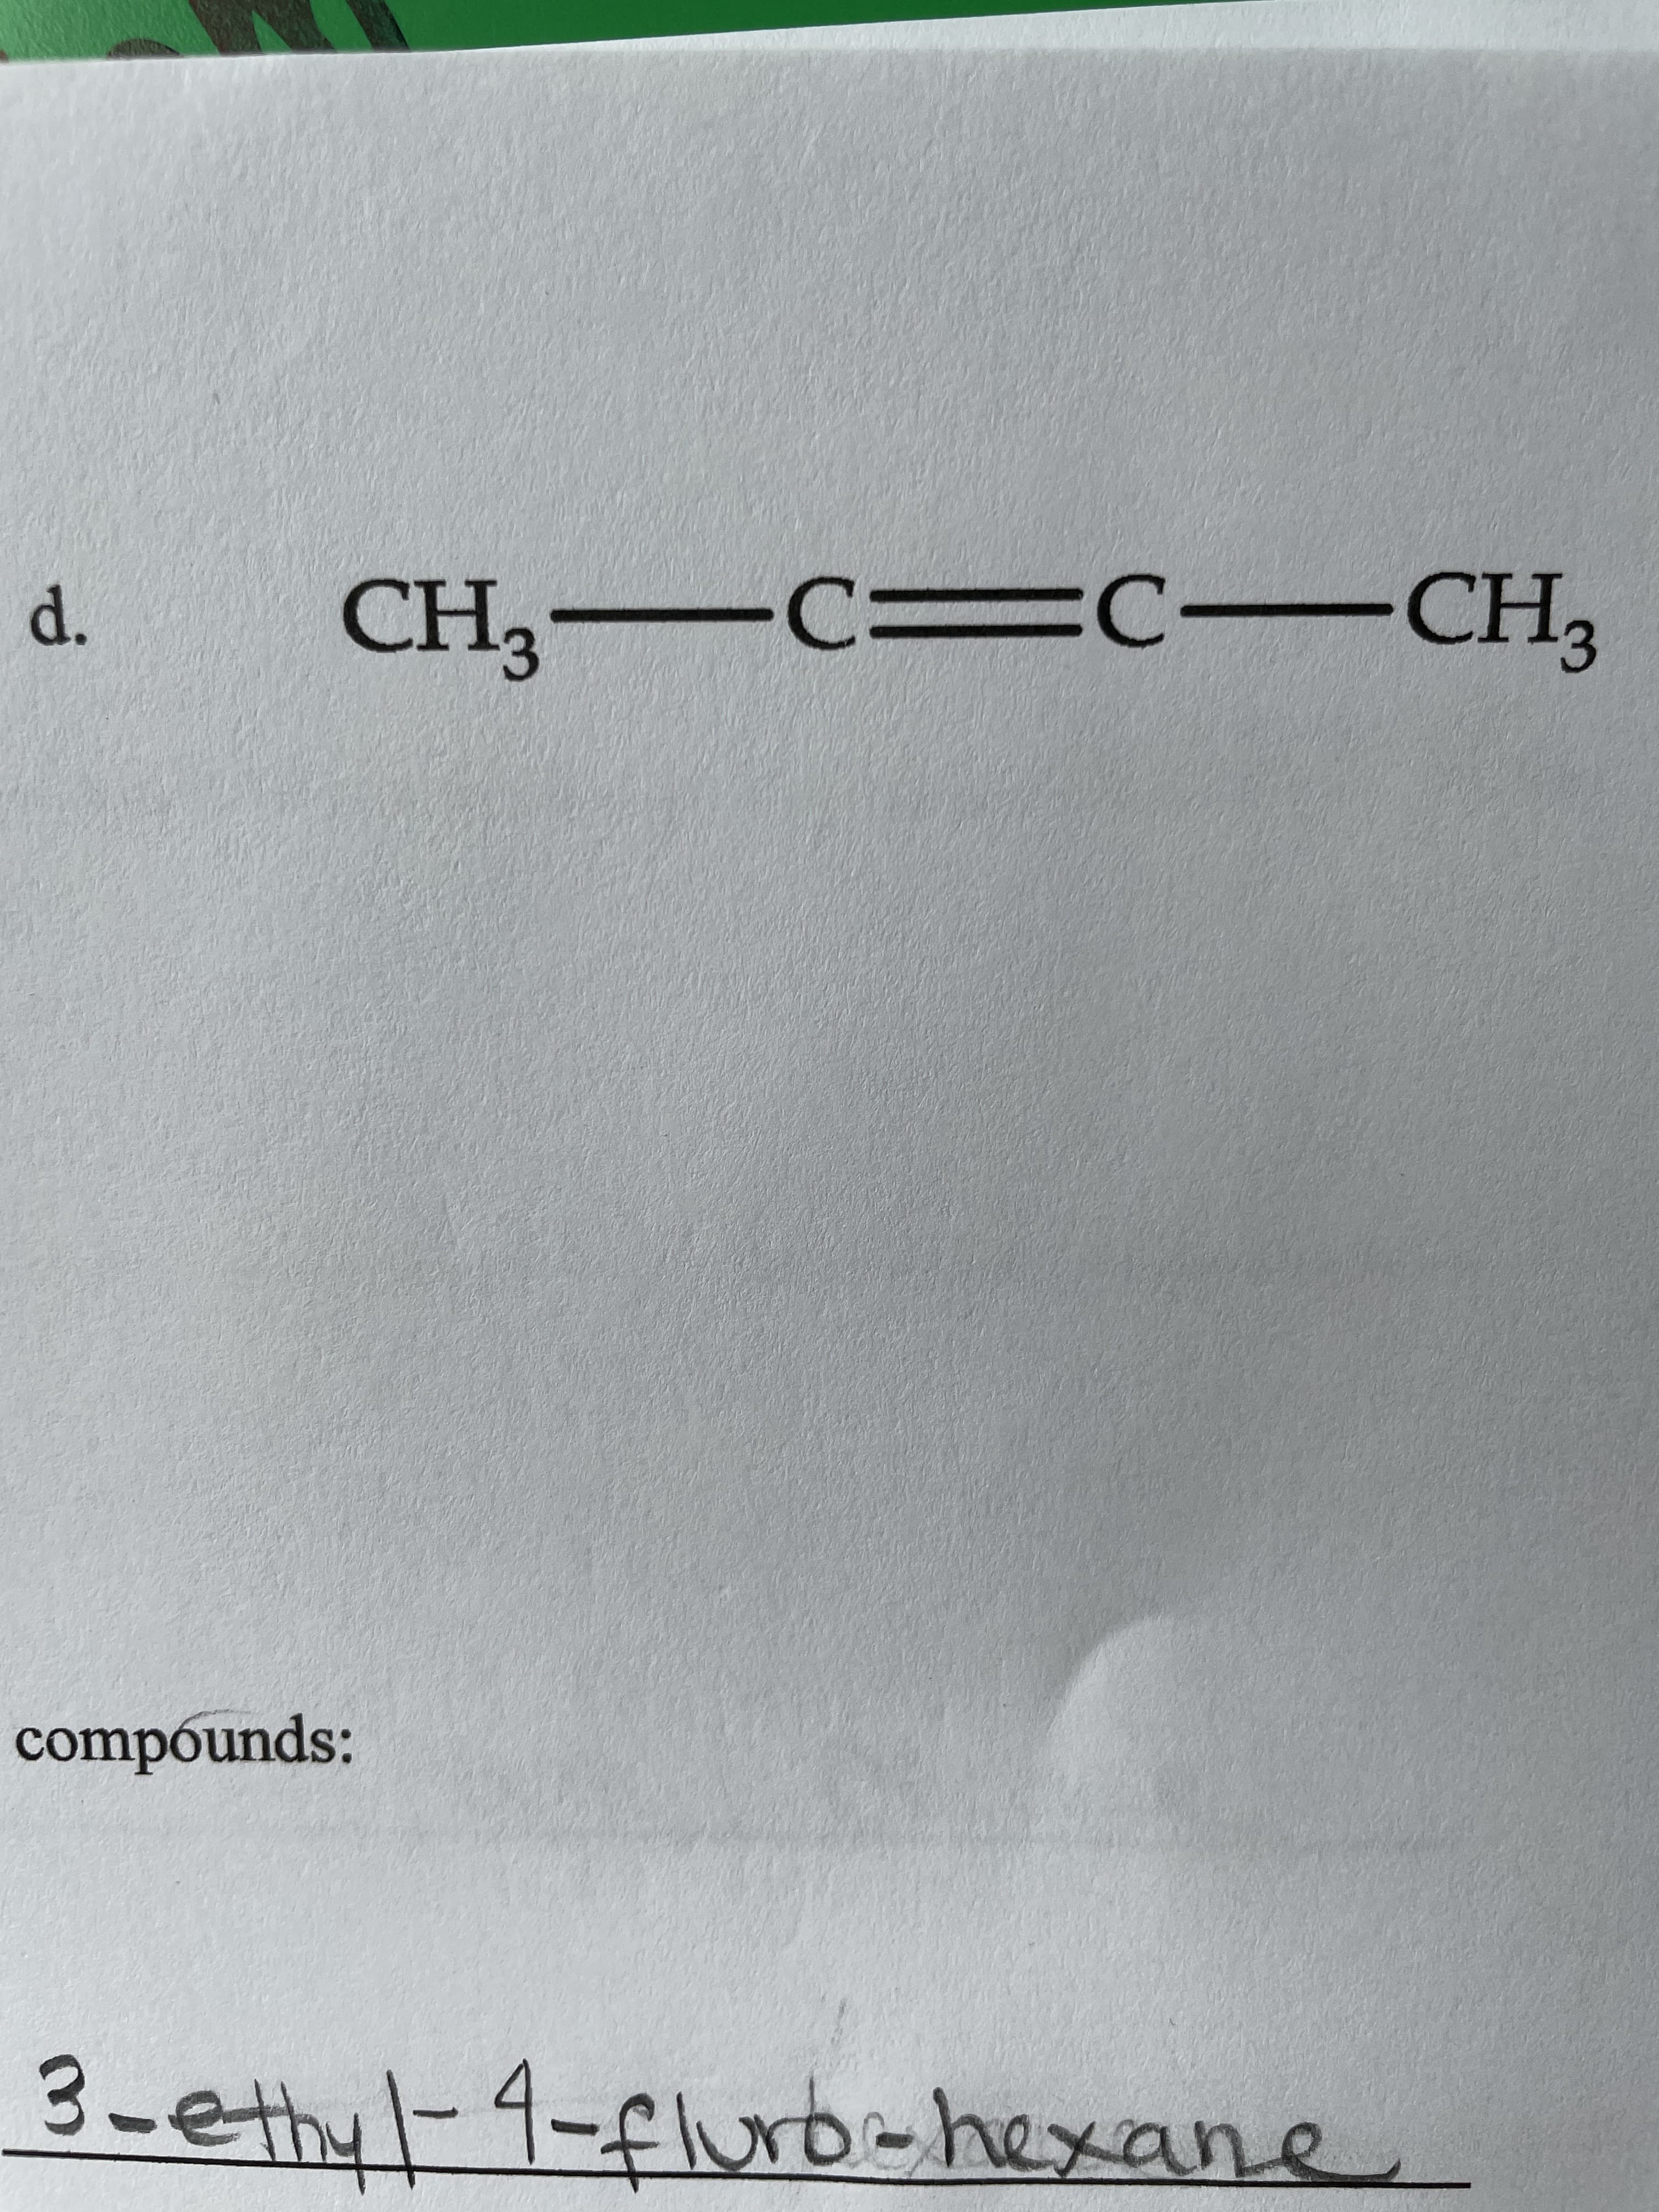 CH3 -CD C-CH,
d.
compounds:
3-ethyl-4-fluro-hexane
